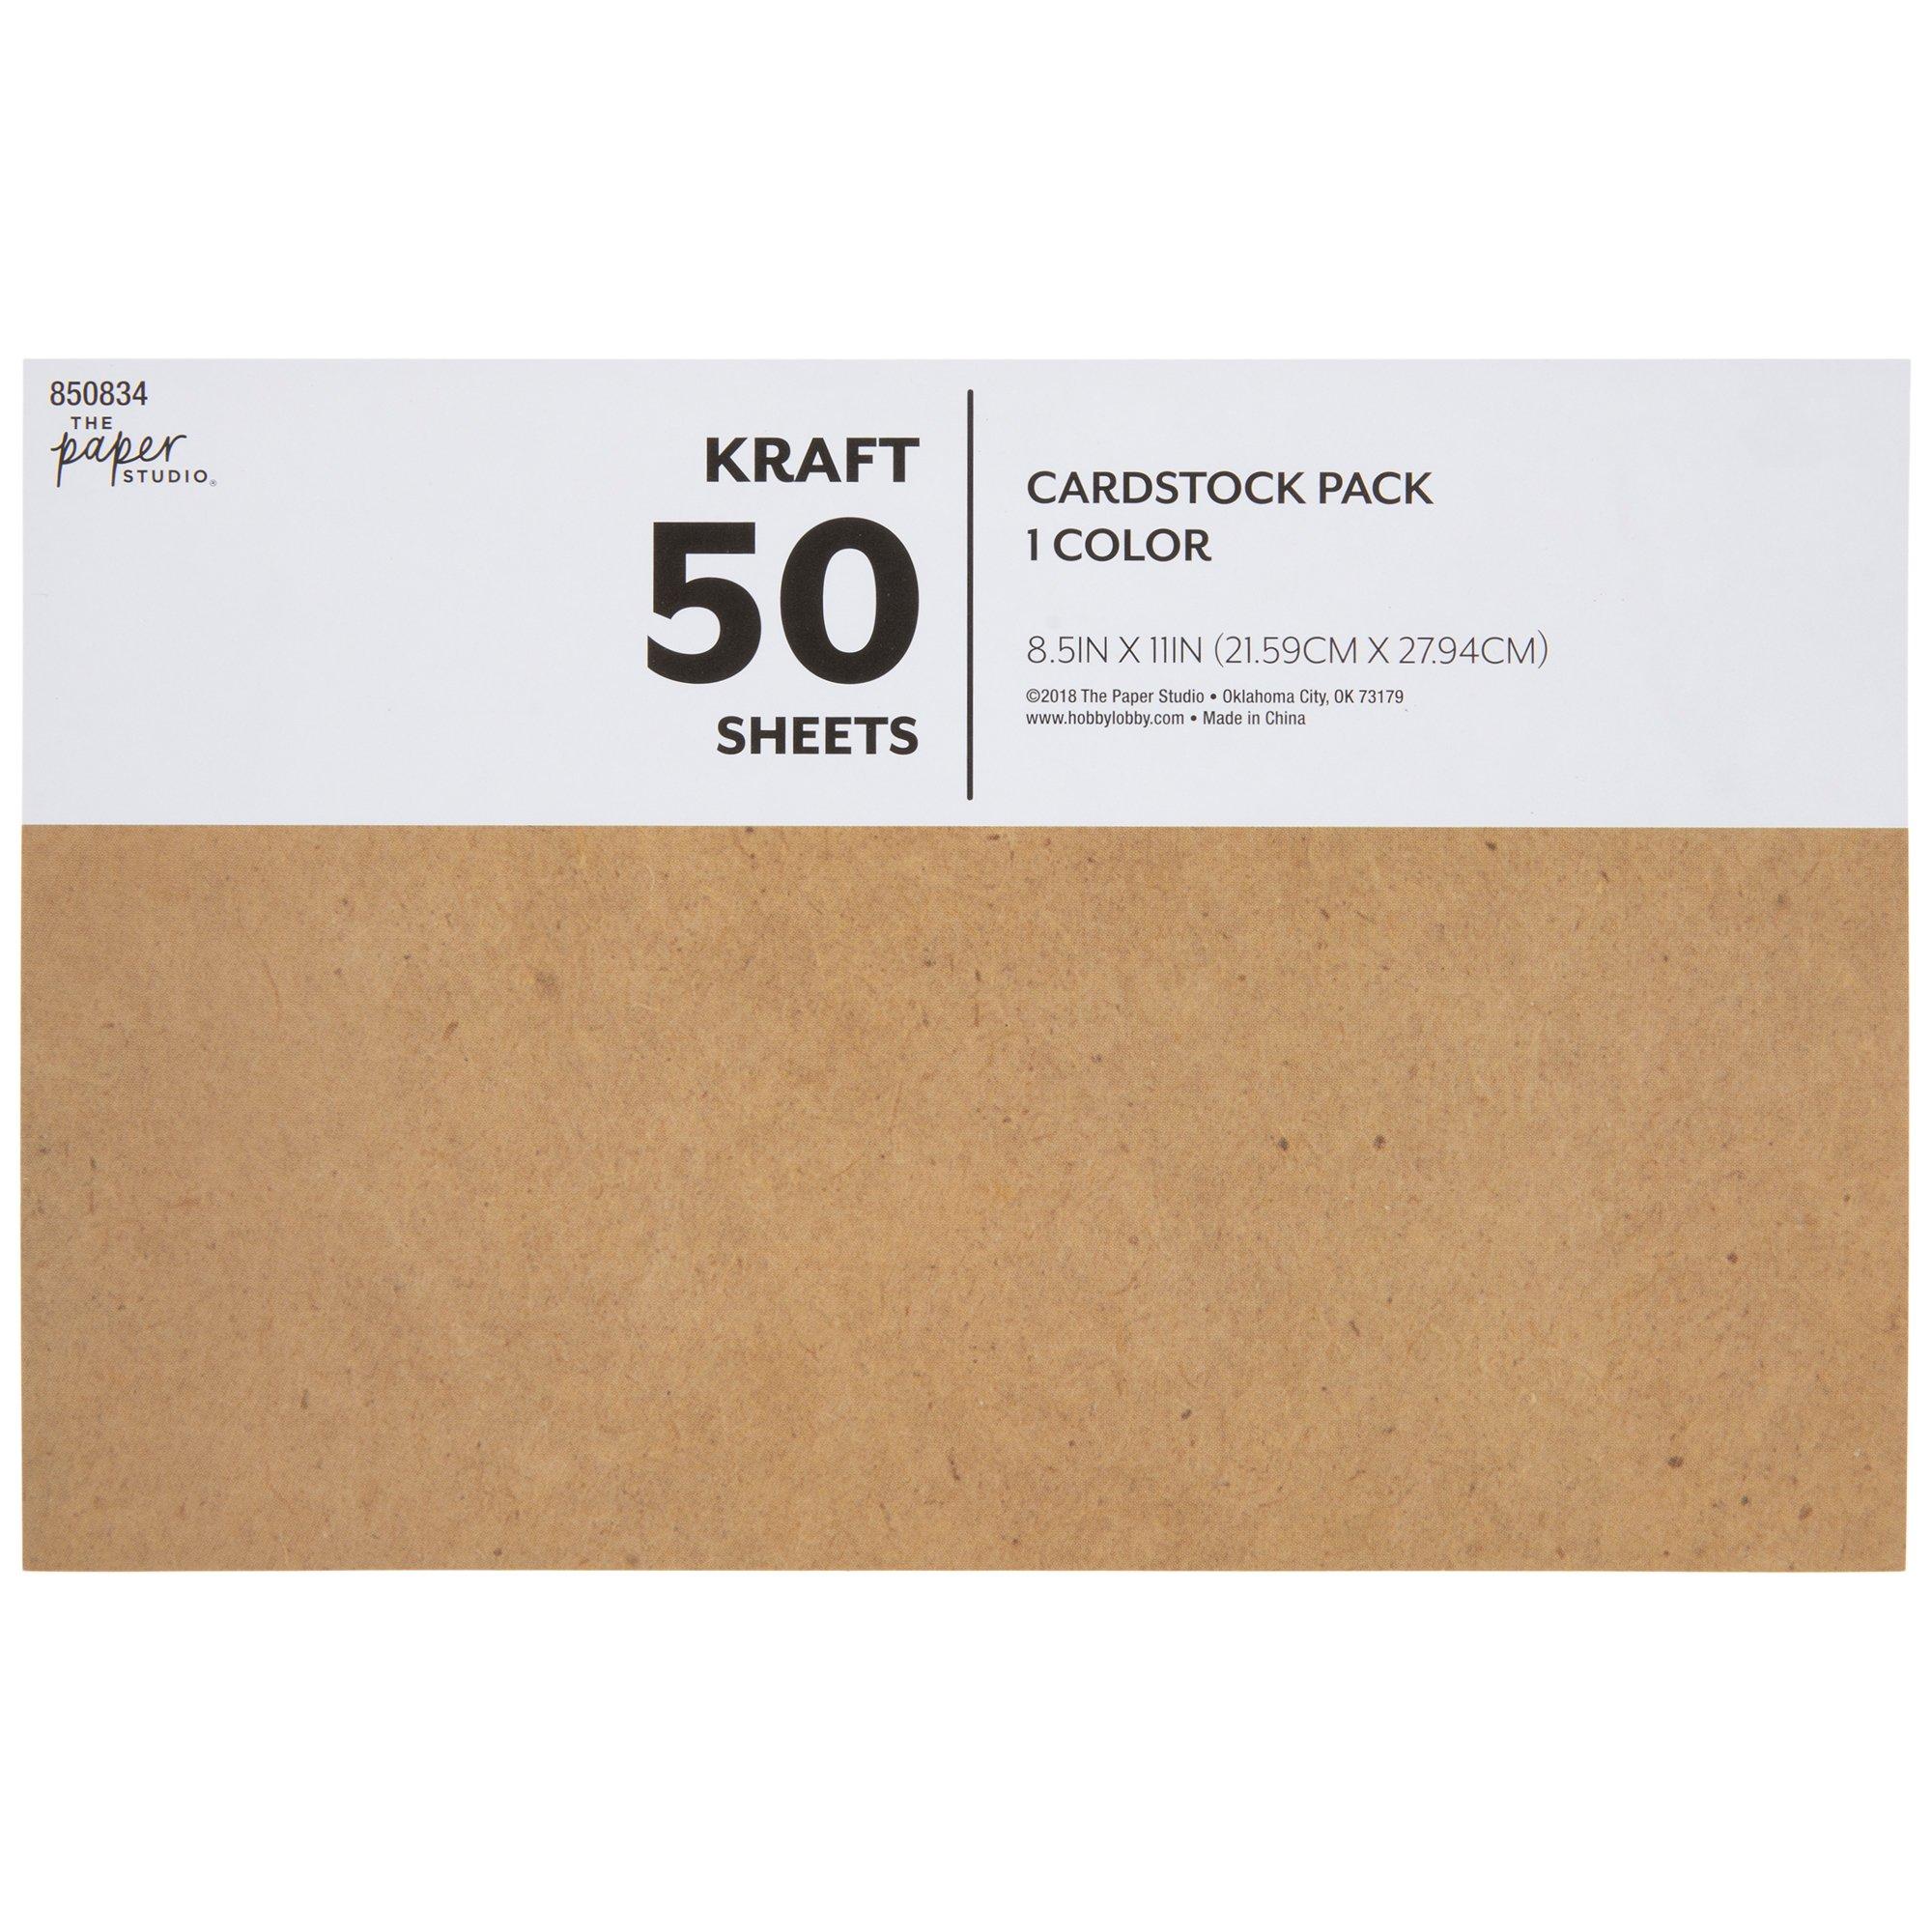 Kraft Cardstock Paper Pack, Hobby Lobby